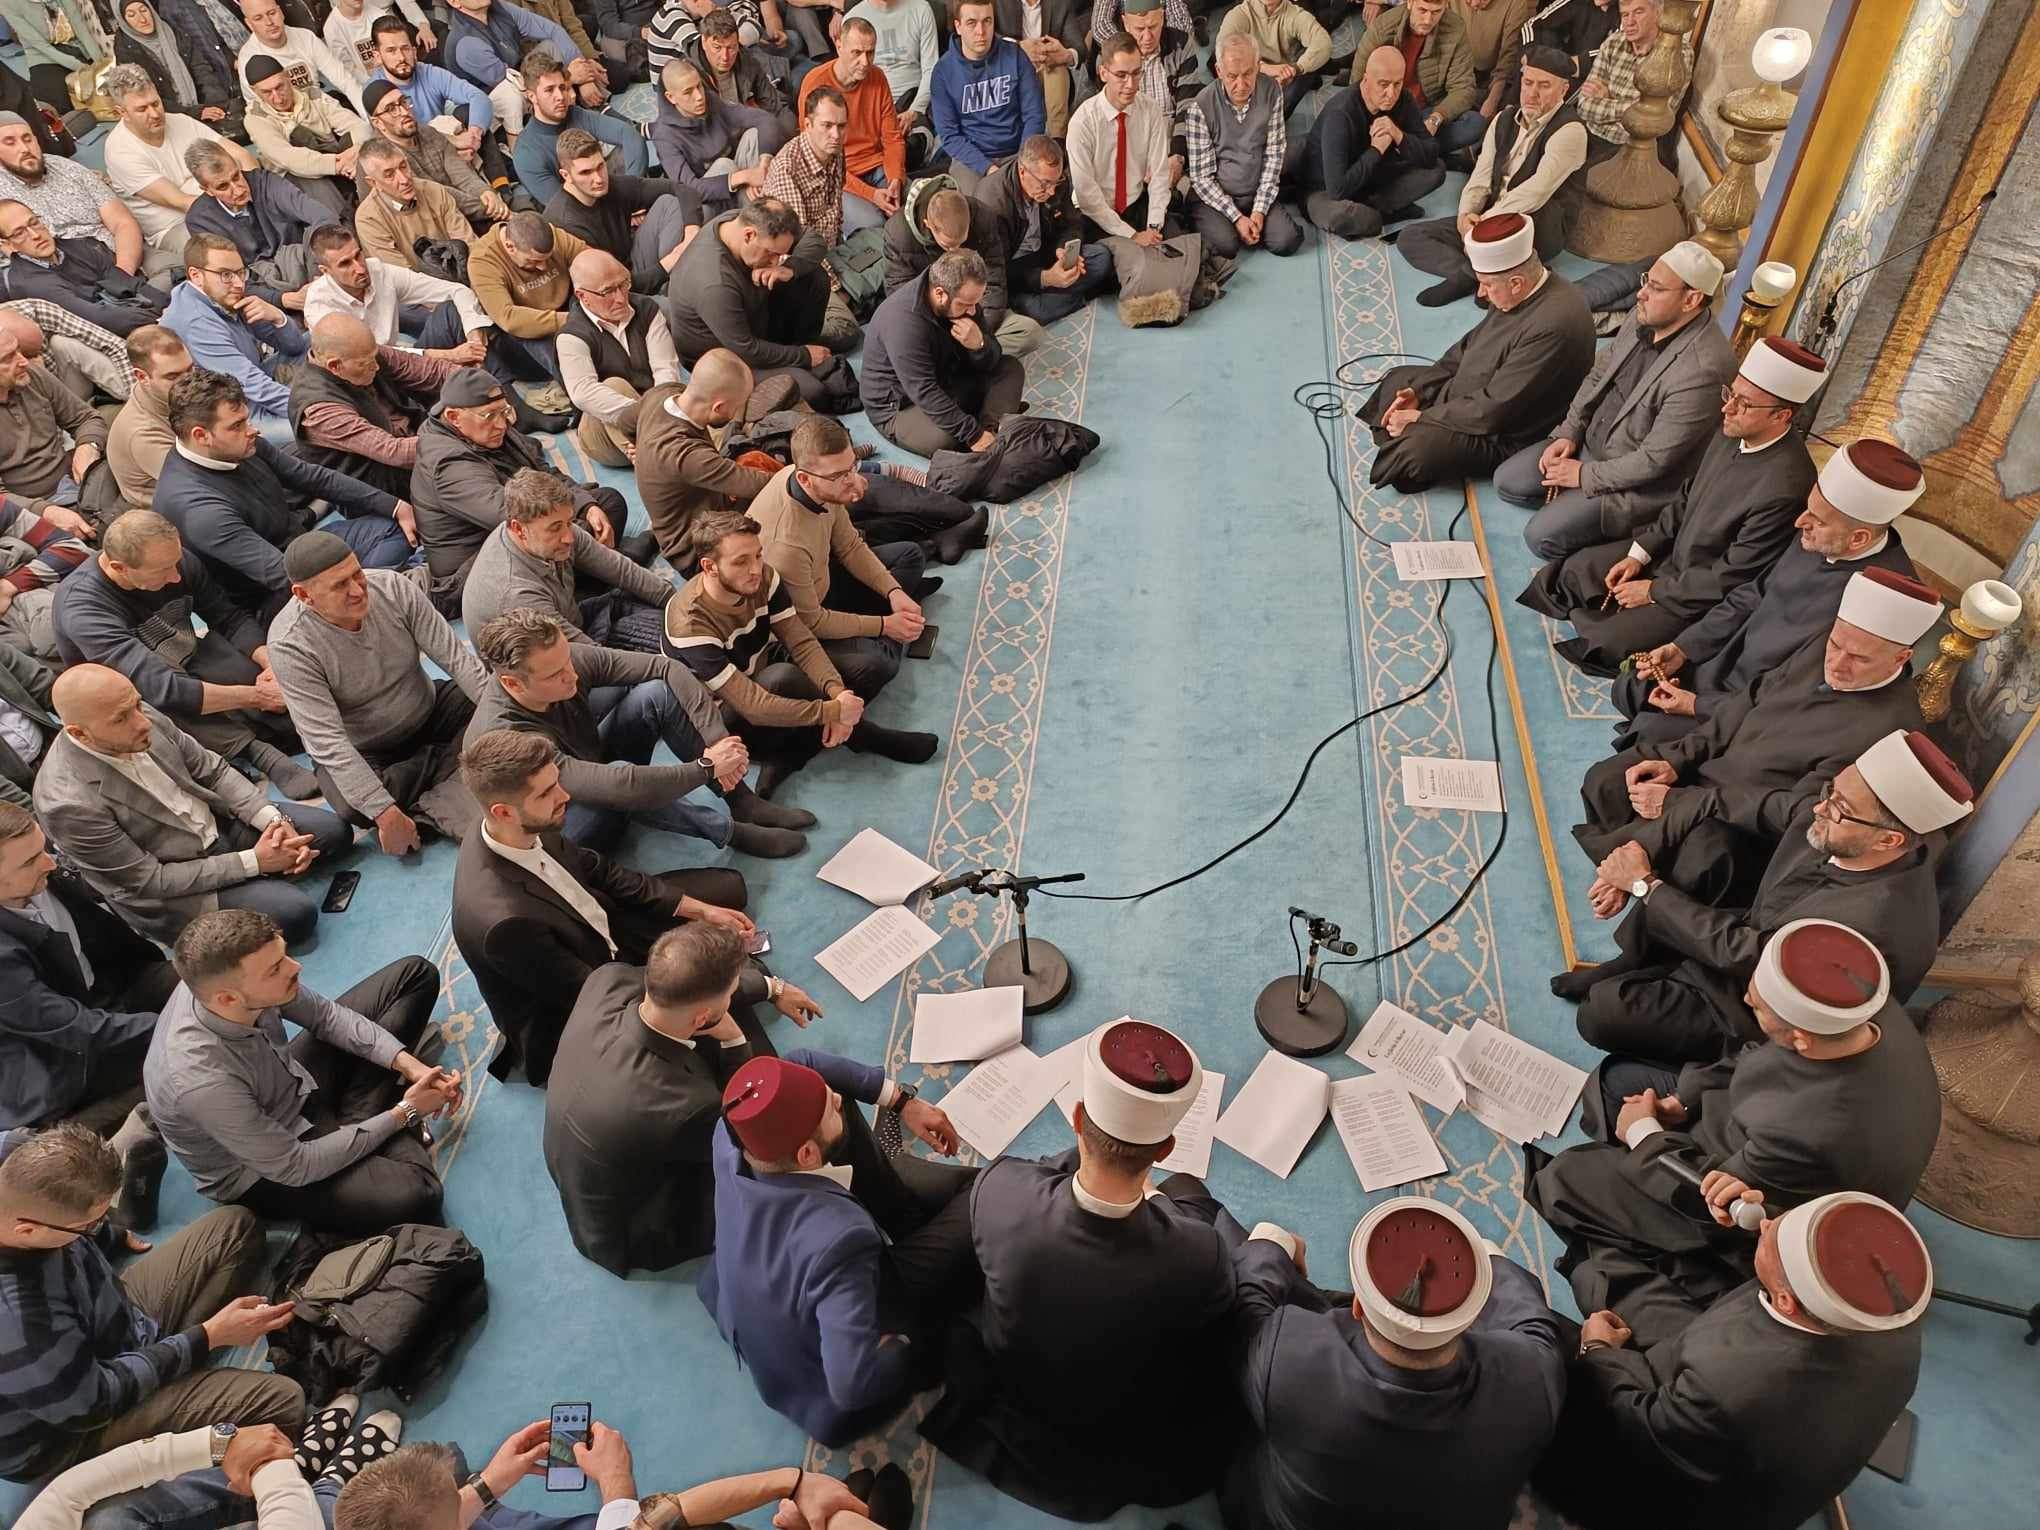 Lejletul-berat: Centralni program MIZ Sarajevo proučen u Carevoj džamiji